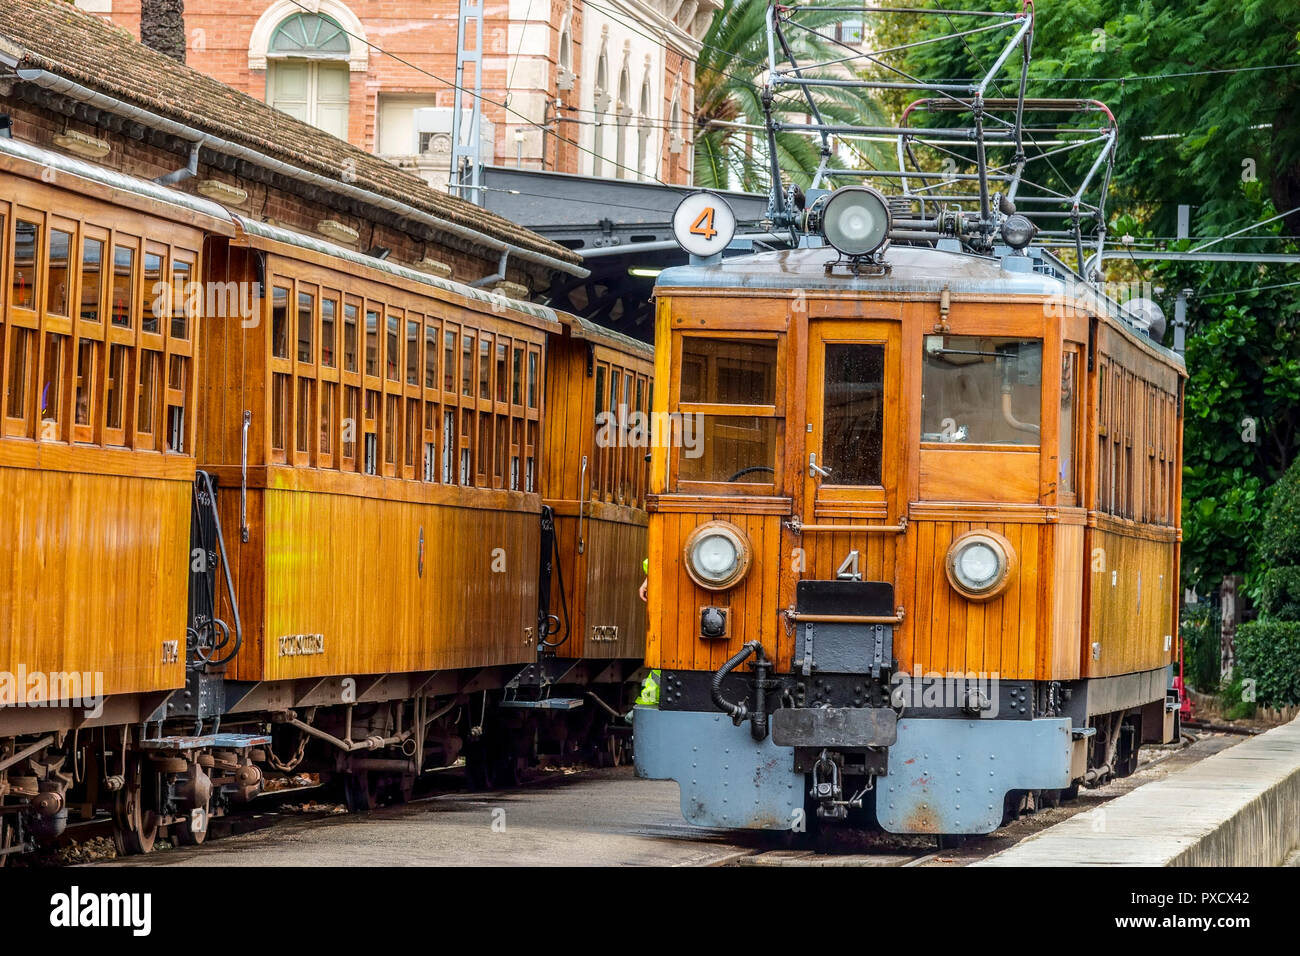 Palma di Maiorca, stazione ferroviaria a Soller con locomotiva e vagoni, storico nostalgico treno d'epoca, Spagna Foto Stock